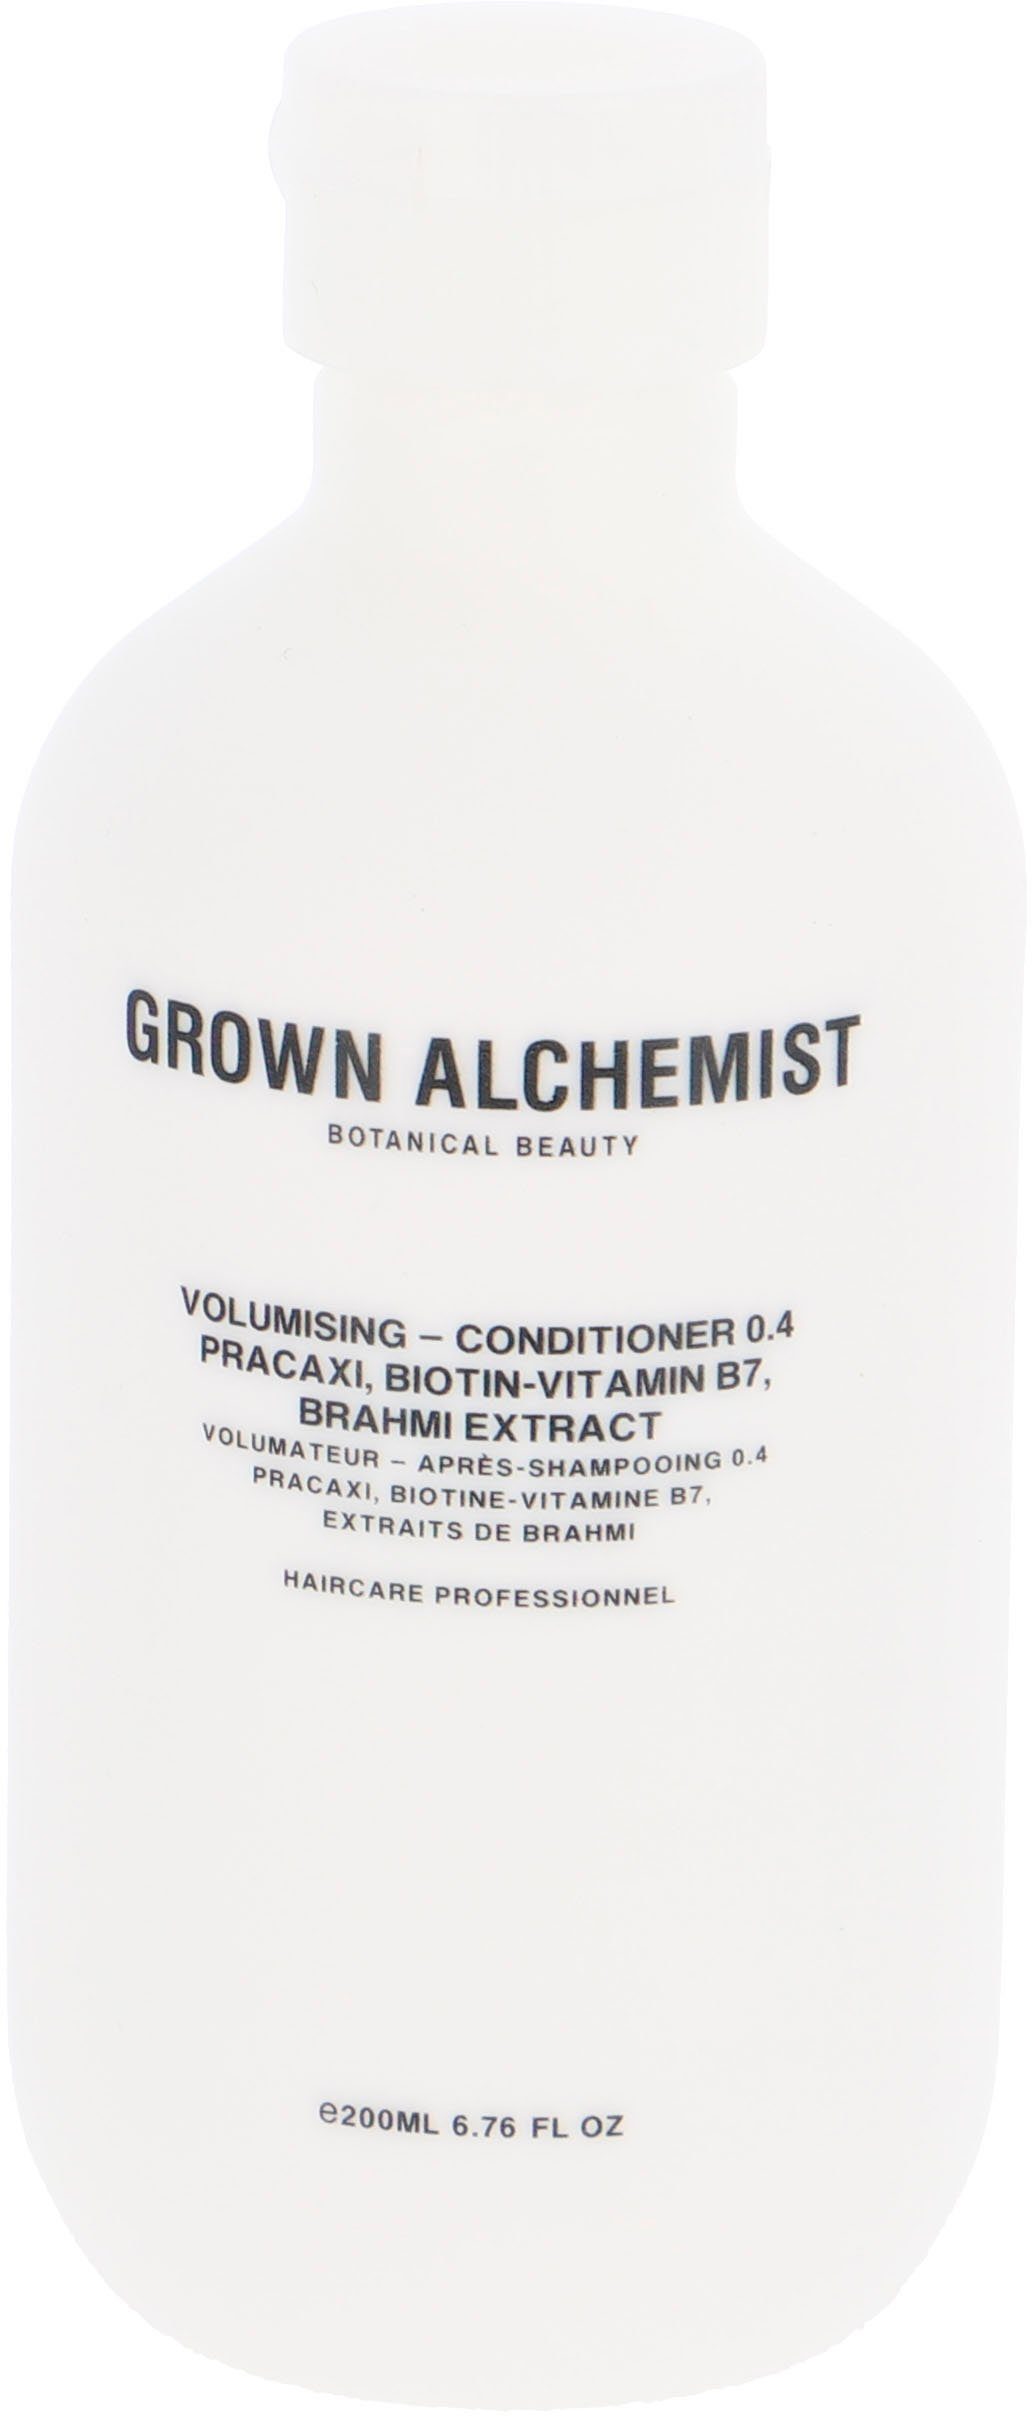 GROWN ALCHEMIST Haarspülung Volumising - Conditioner 0.4, Pracaxi, Biotin-Vitamin B7, Brahmi Extract